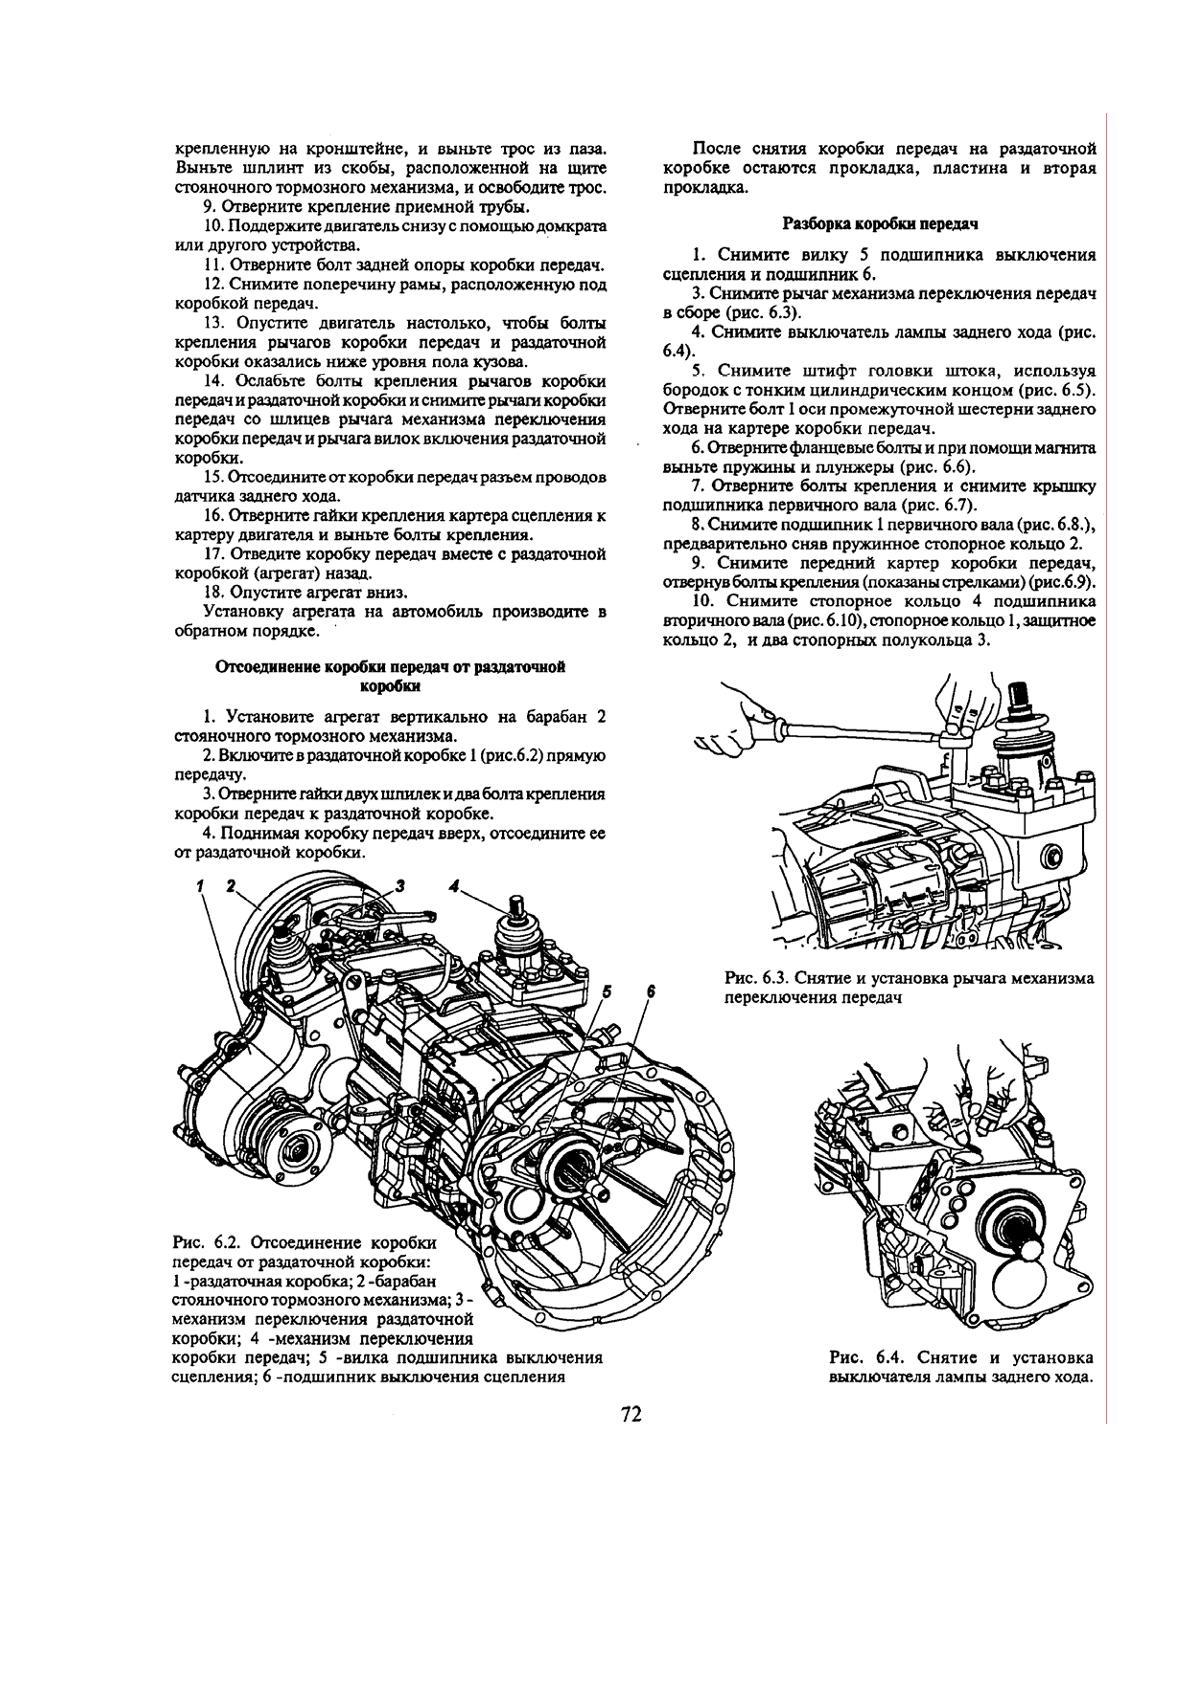 Ремонт коробки передач ГАЗ и УАЗ